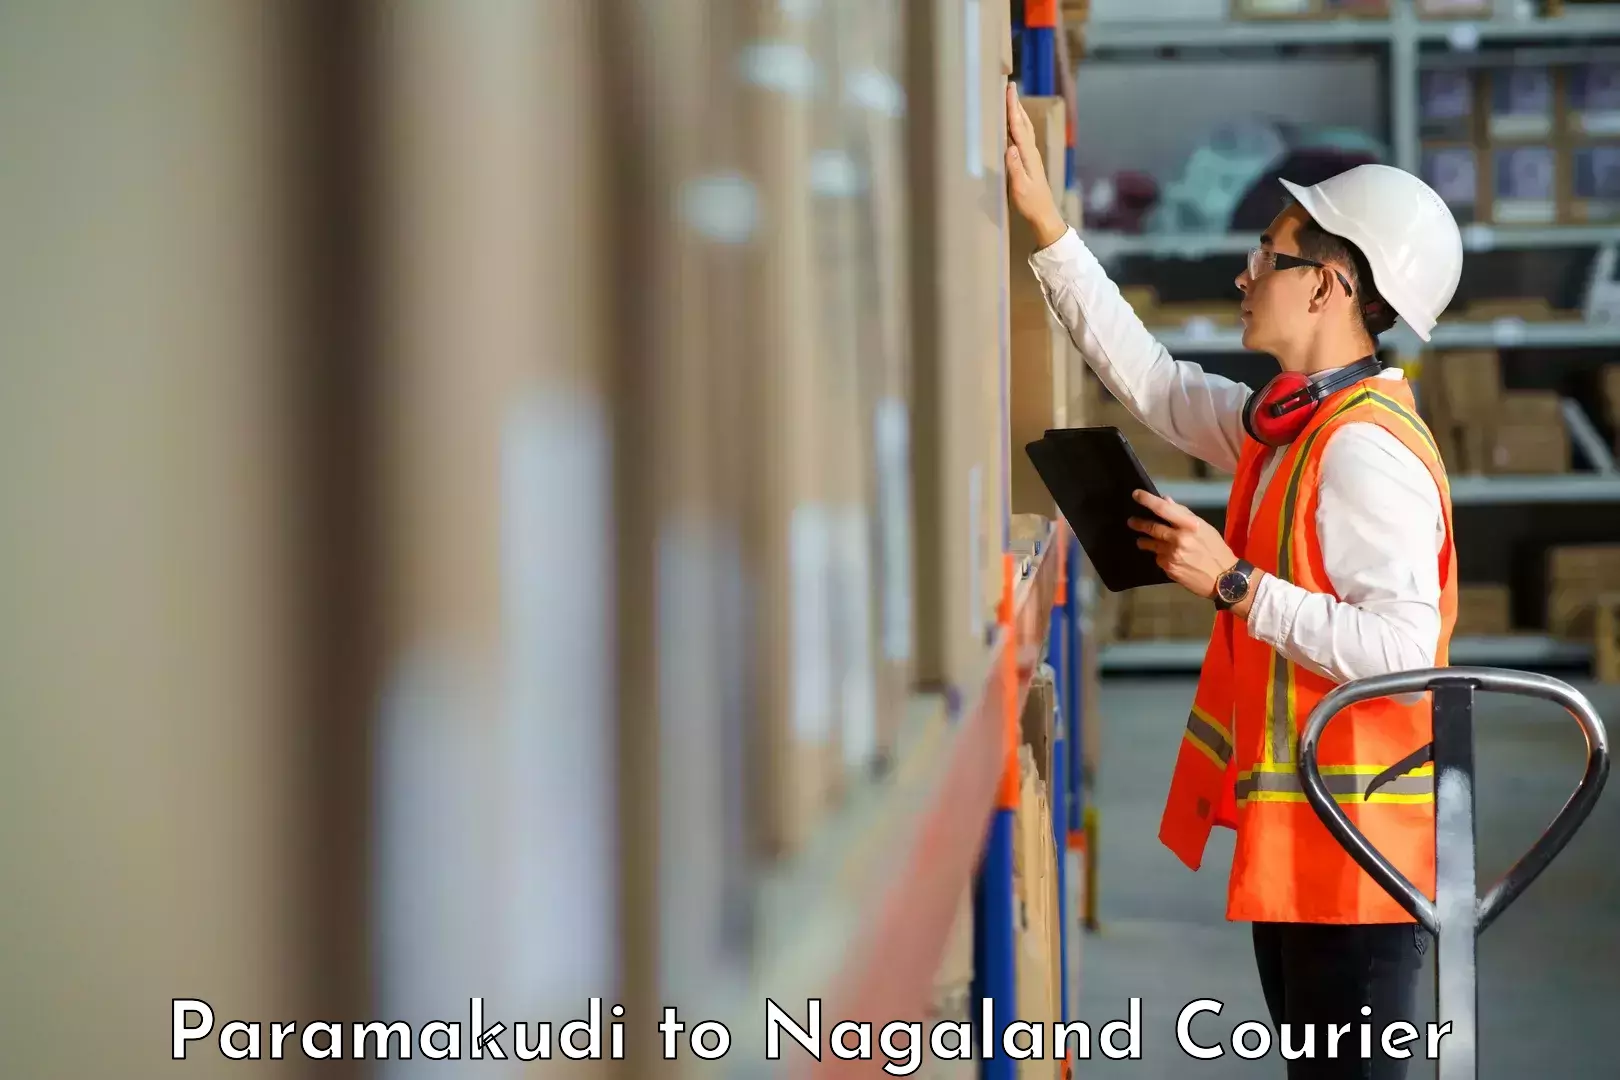 High-performance logistics Paramakudi to NIT Nagaland